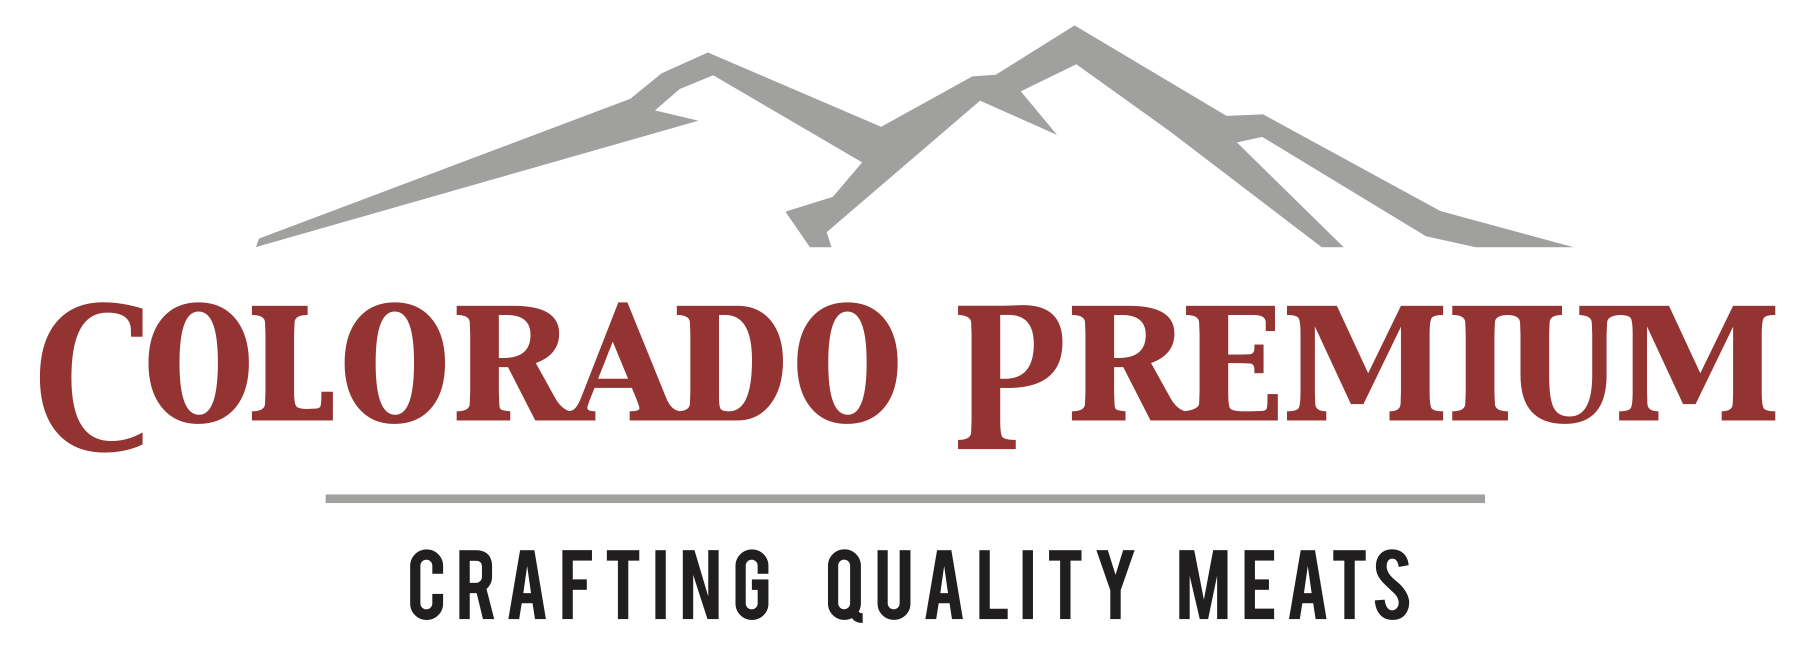 Colorado Premium